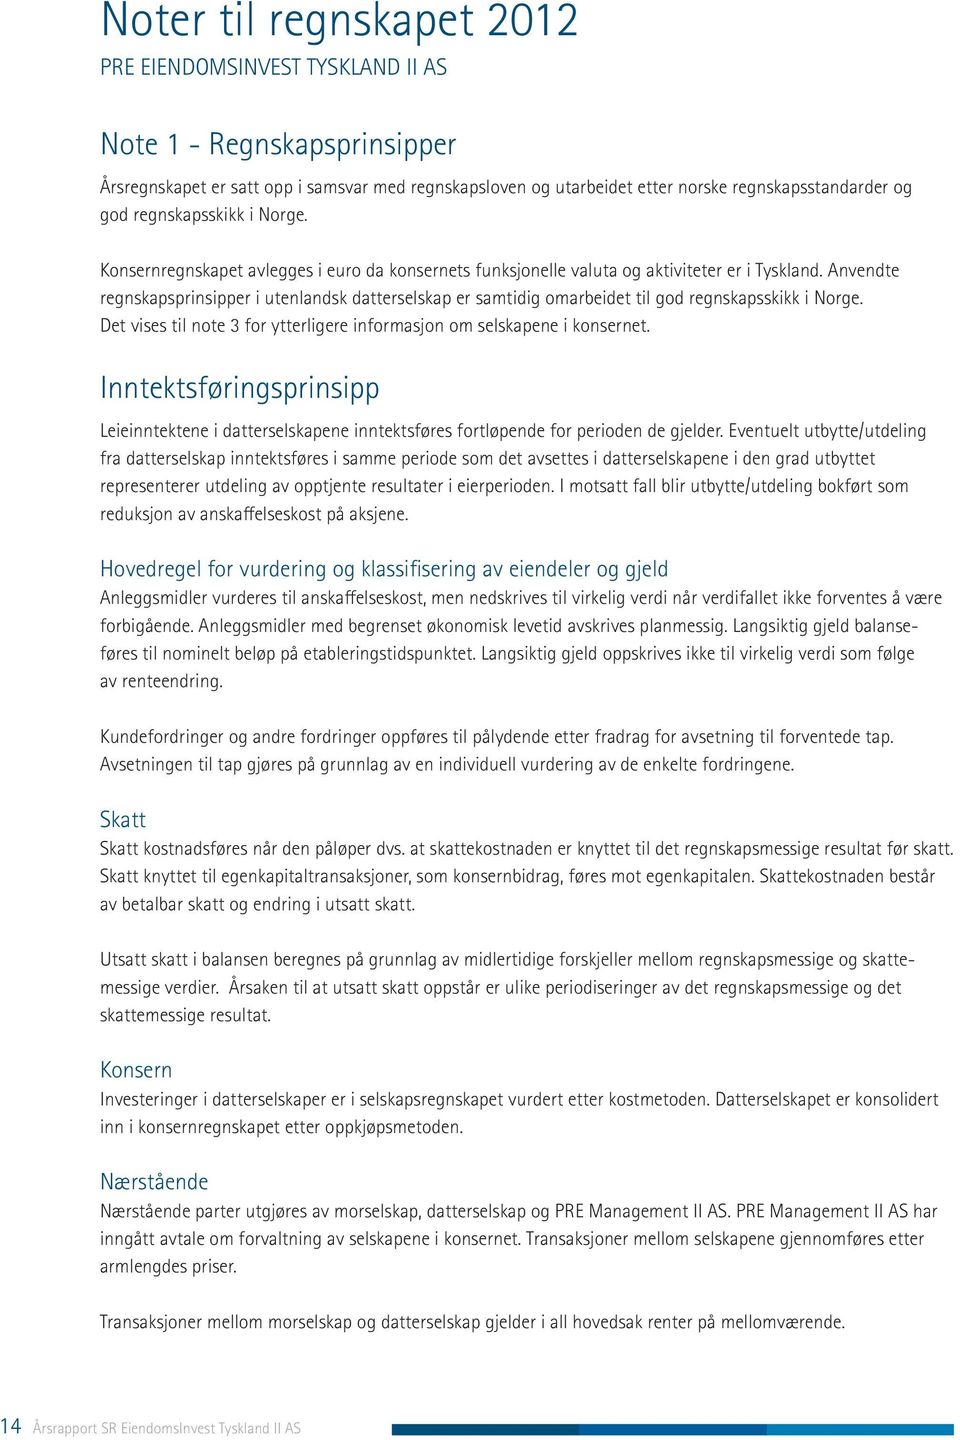 Anvendte regnskapsprinsipper i utenlandsk datterselskap er samtidig omarbeidet til god regnskapsskikk i Norge. Det vises til note 3 for ytterligere informasjon om selskapene i konsernet.